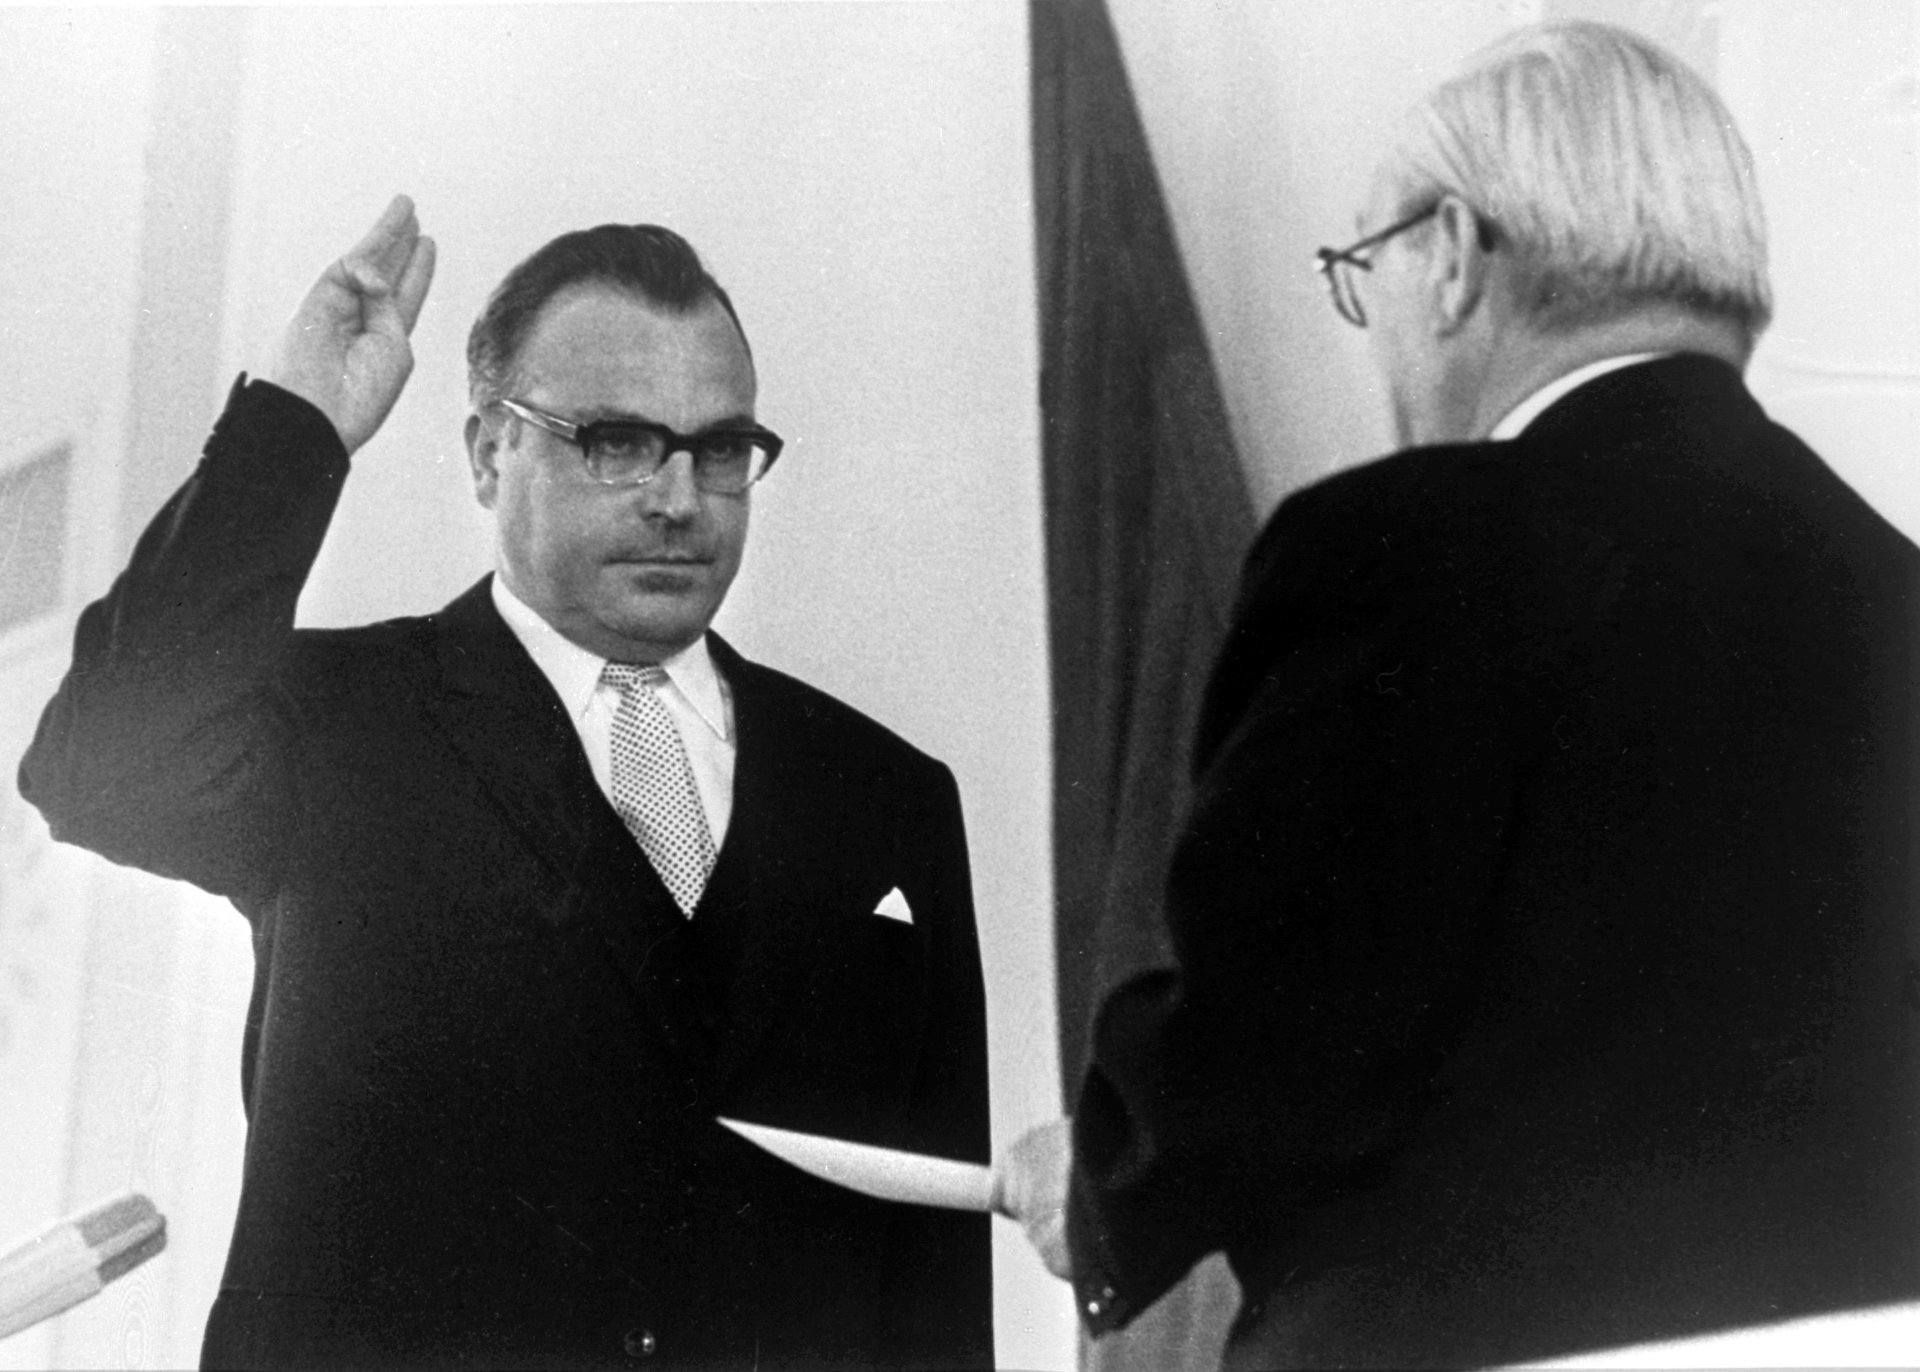 Schwarz-Weiss-Aufnahme von Helmut Kohl bei seiner Vereidigung als Ministerpräsident von Rheinland-Pfalz